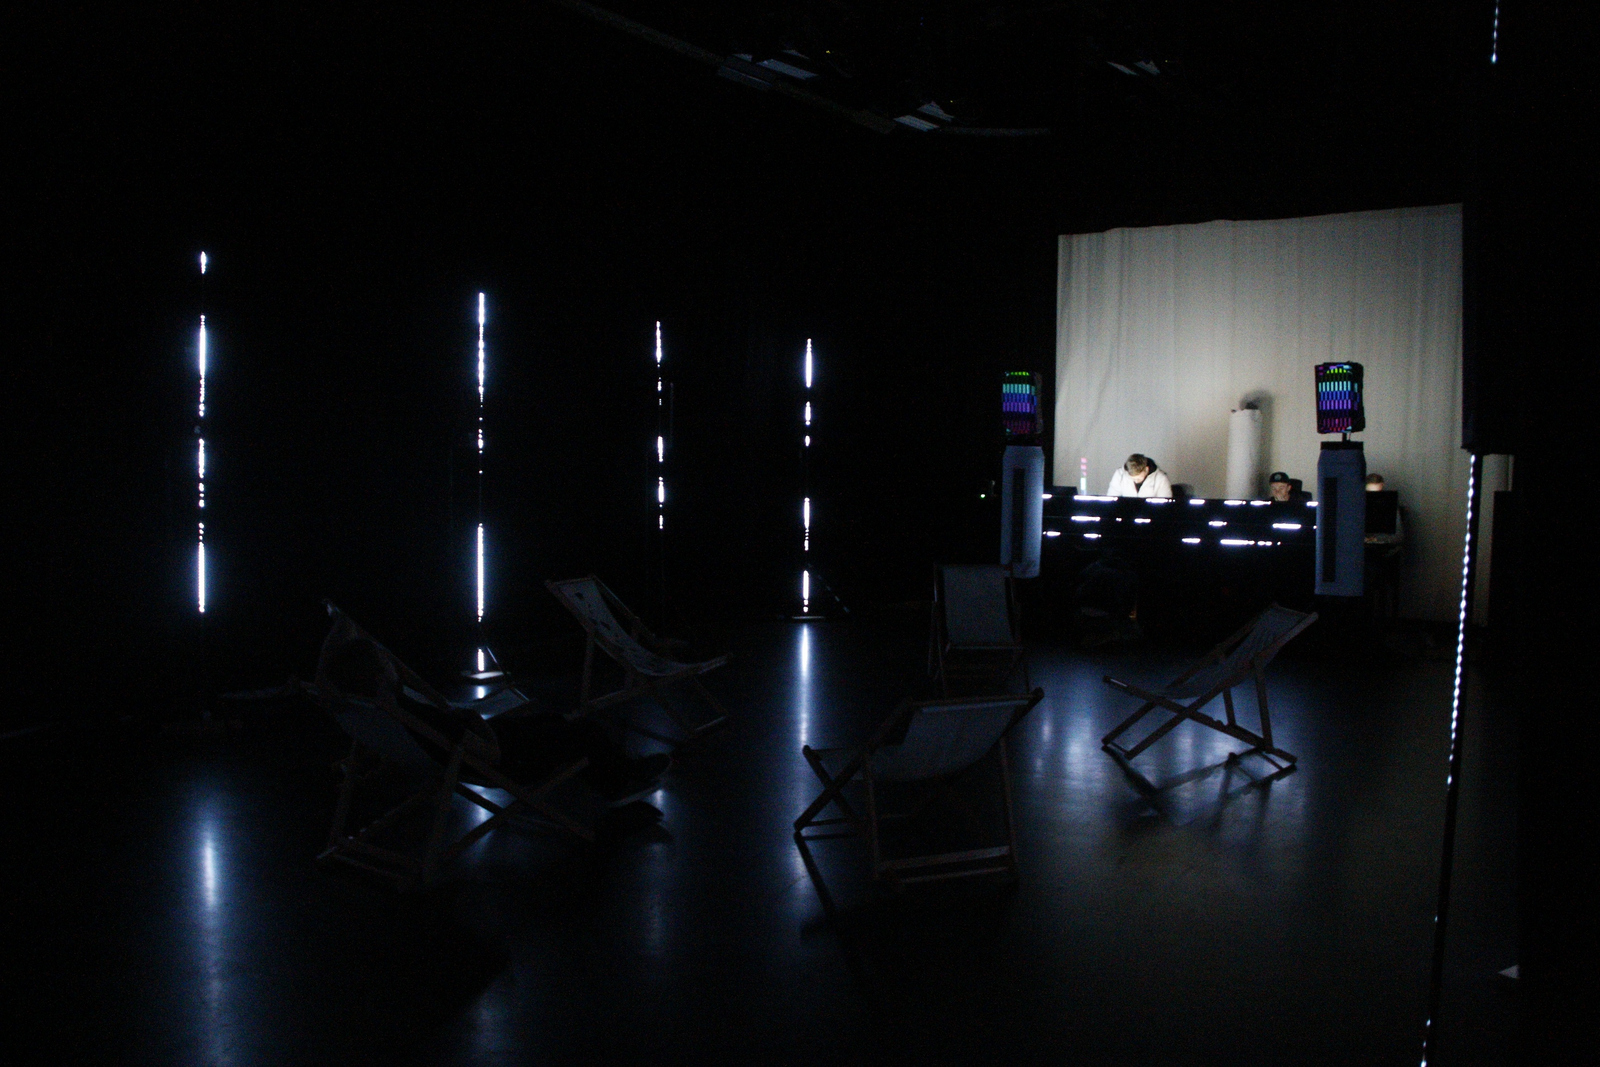 Licht- und Soundinstallation im dunklen Studio